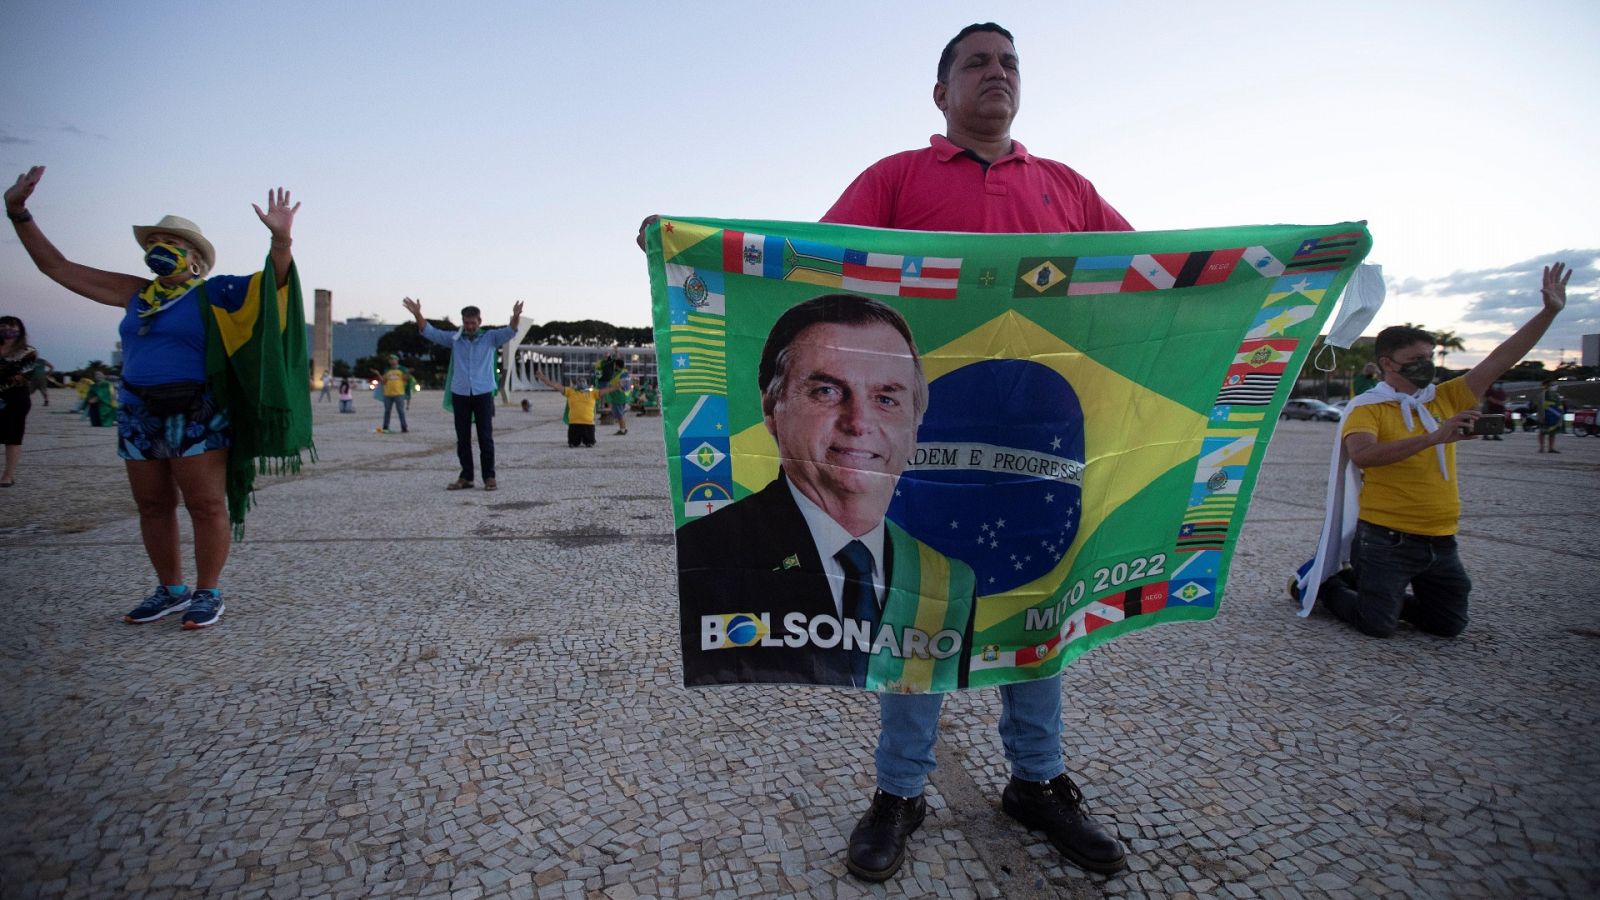 Simpatizantes de Bolsonaro rezan este lunes durante una protesta contra el cierre comercial dada la pandemia covid-19, en Brasilia (Brasil).